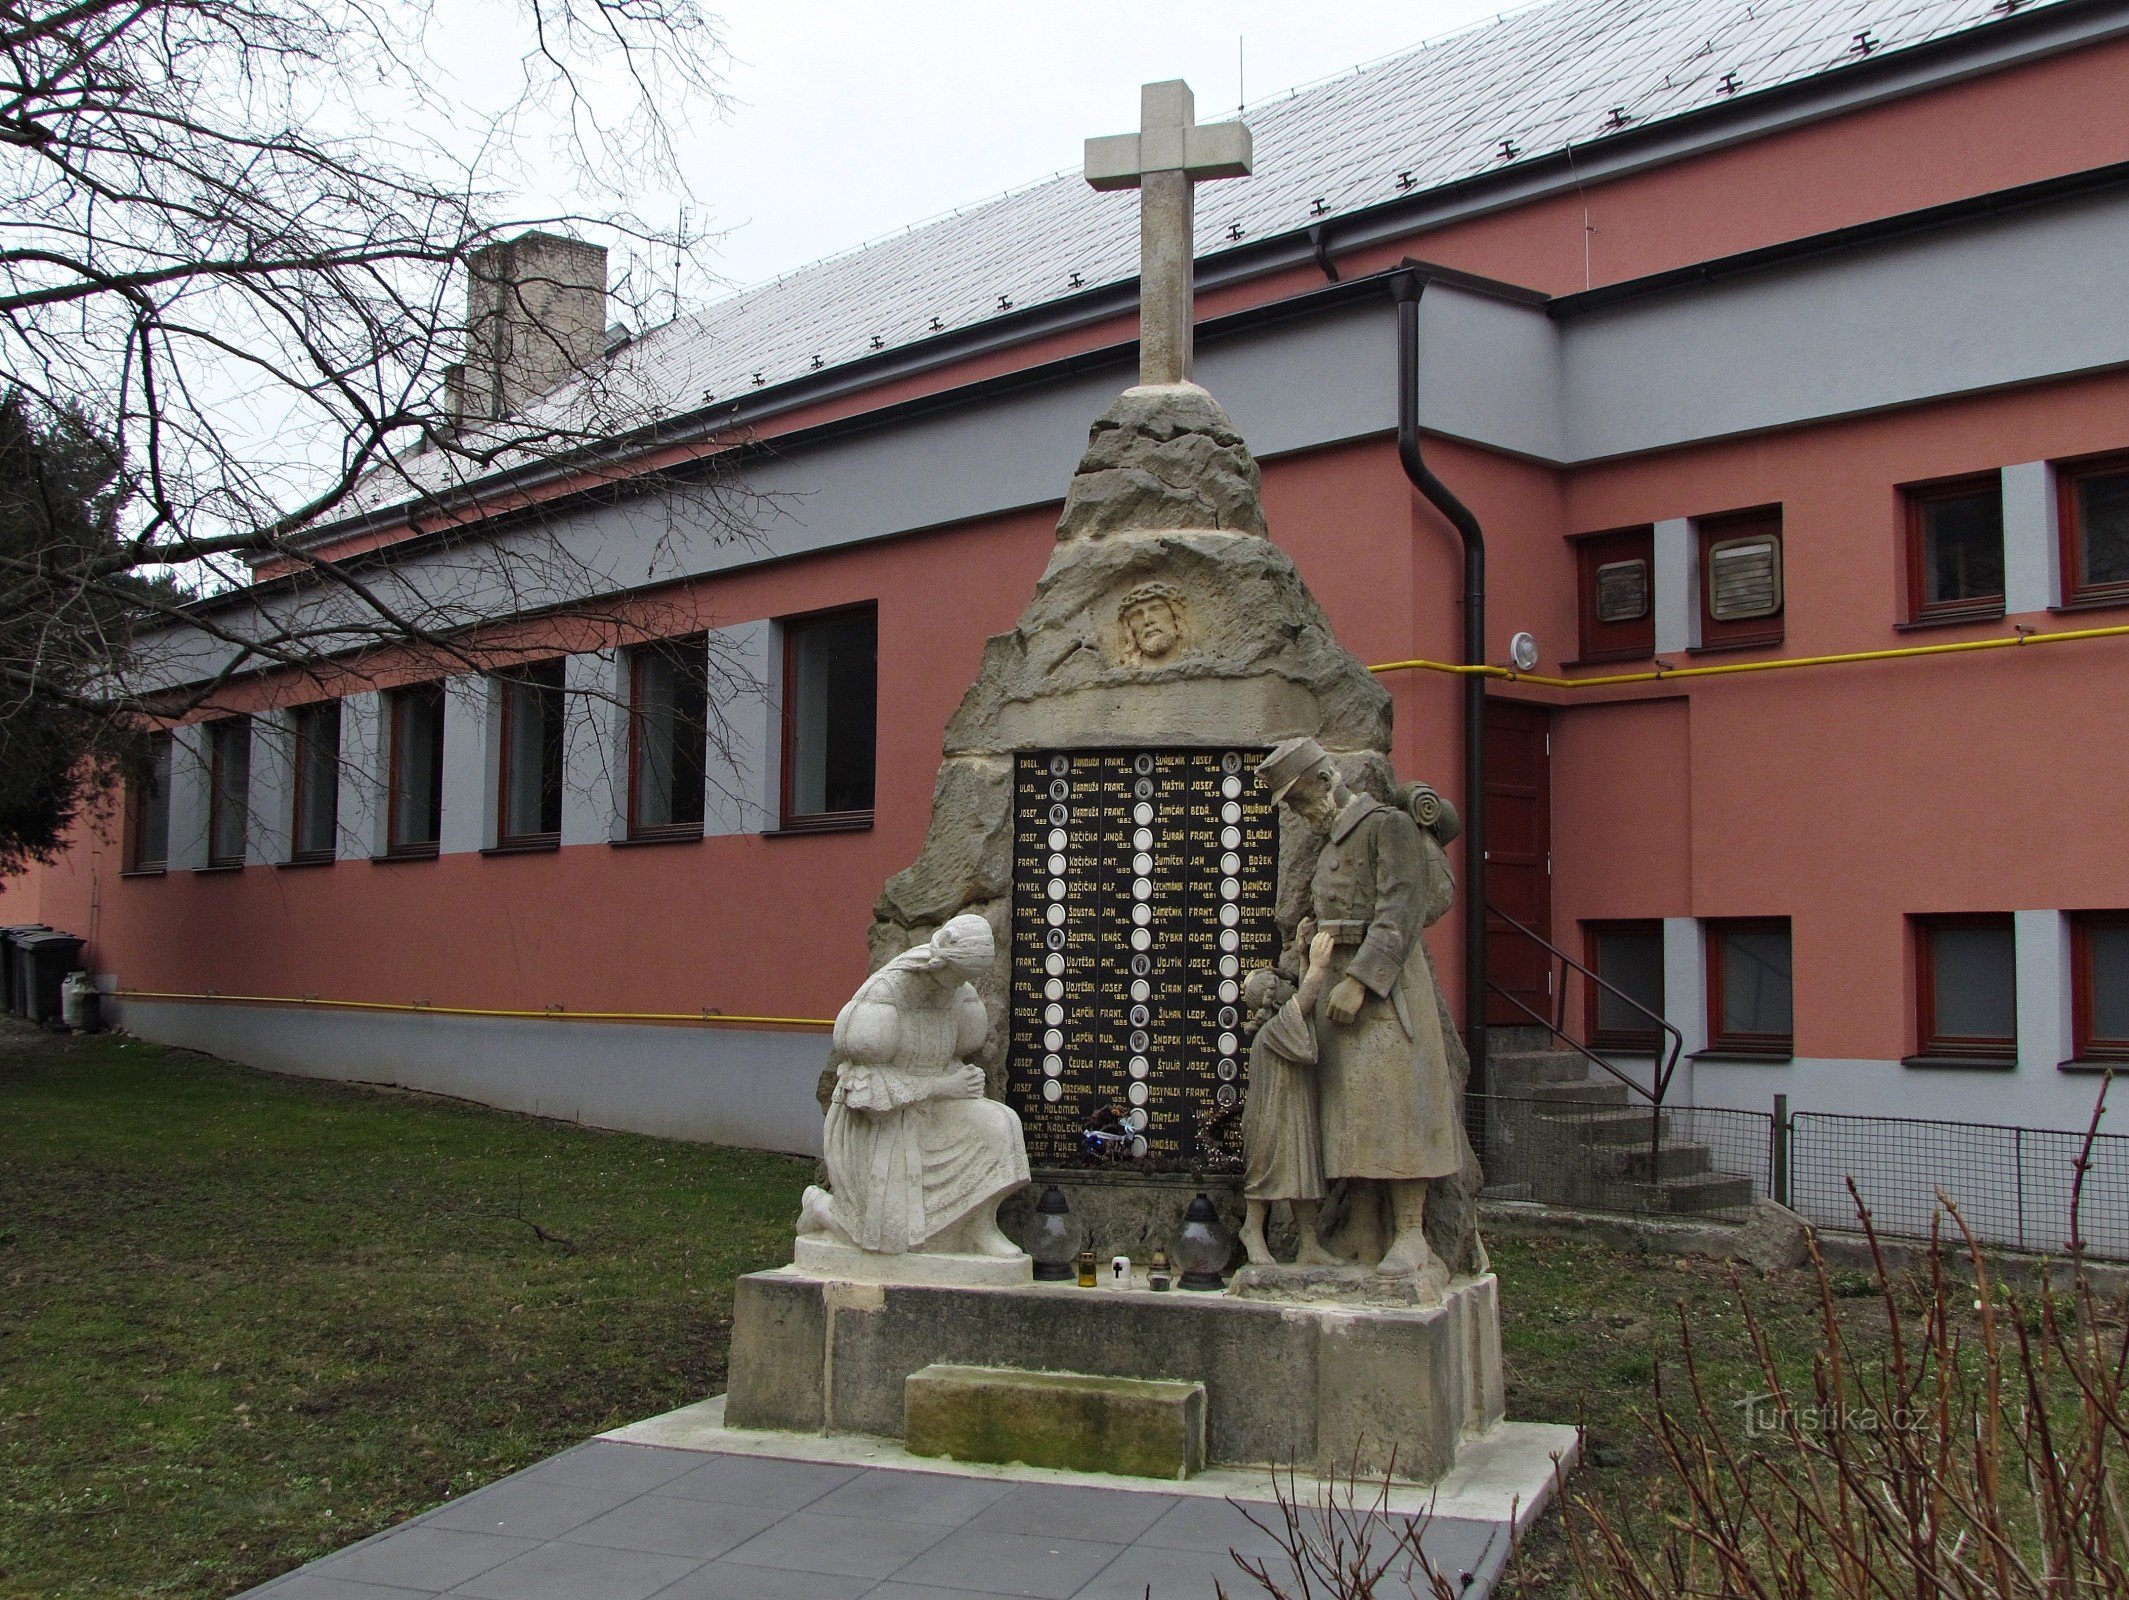 Spytihněv - 第一次世界大戦の戦没者の記念碑